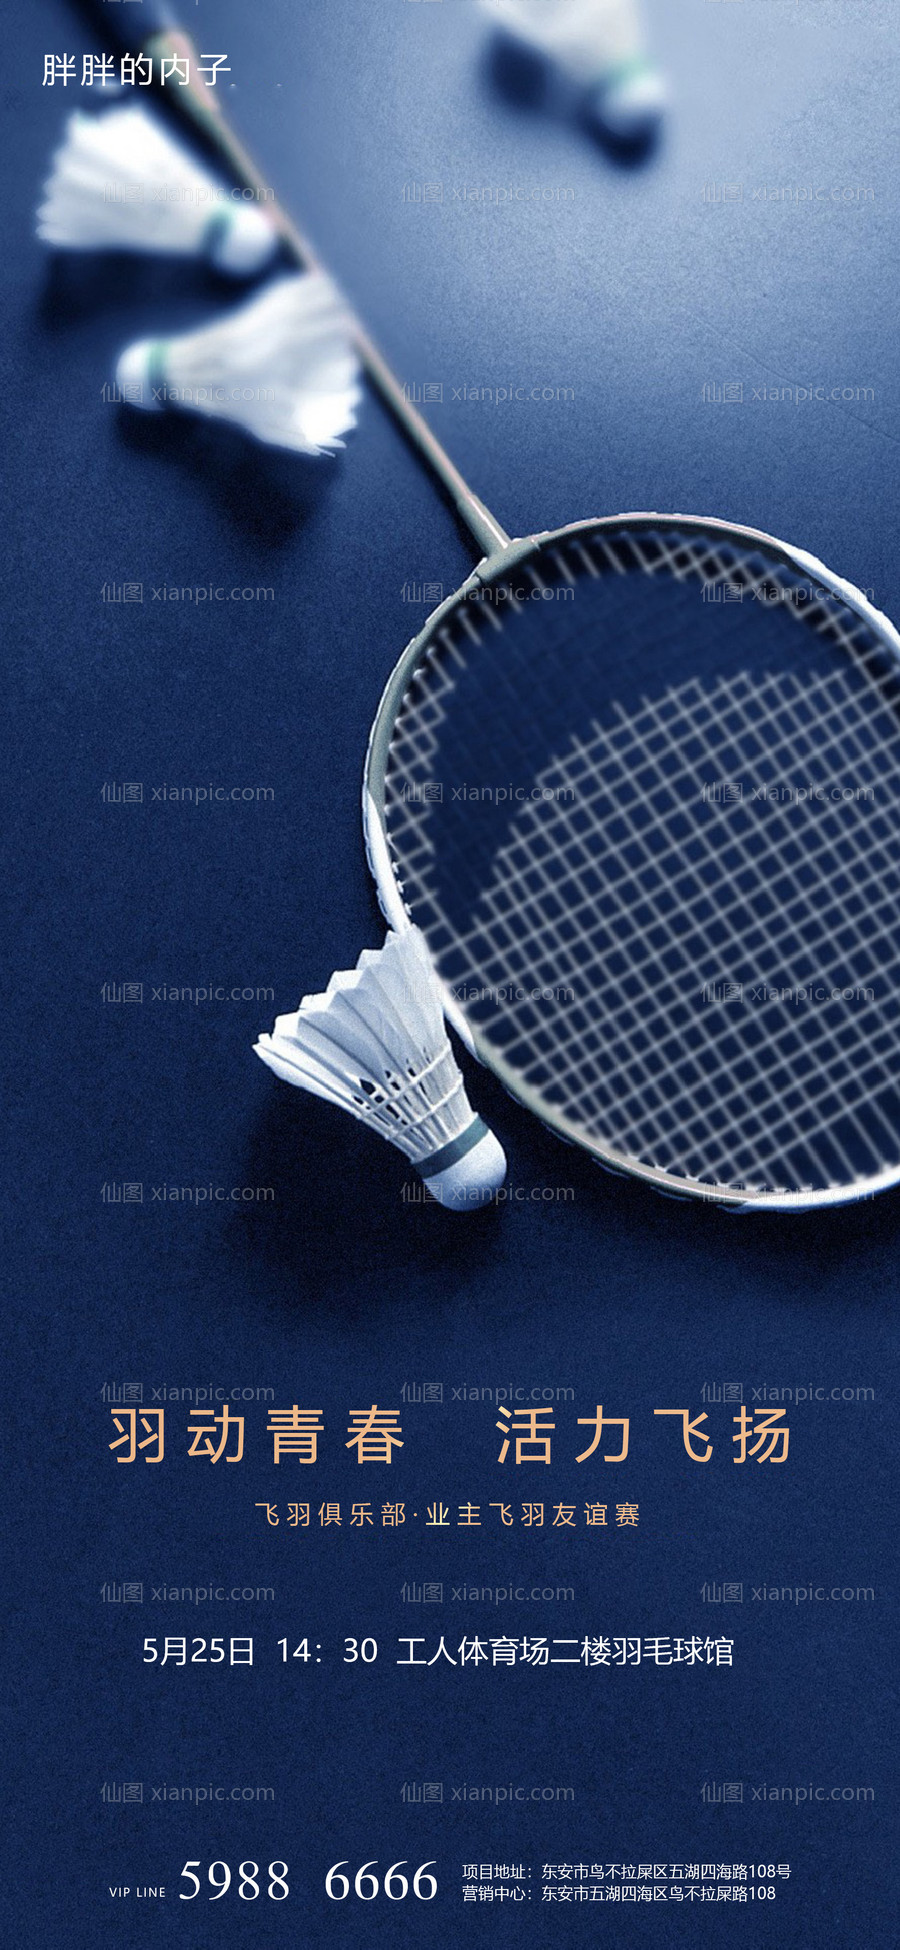 素材乐-羽毛球活动海报